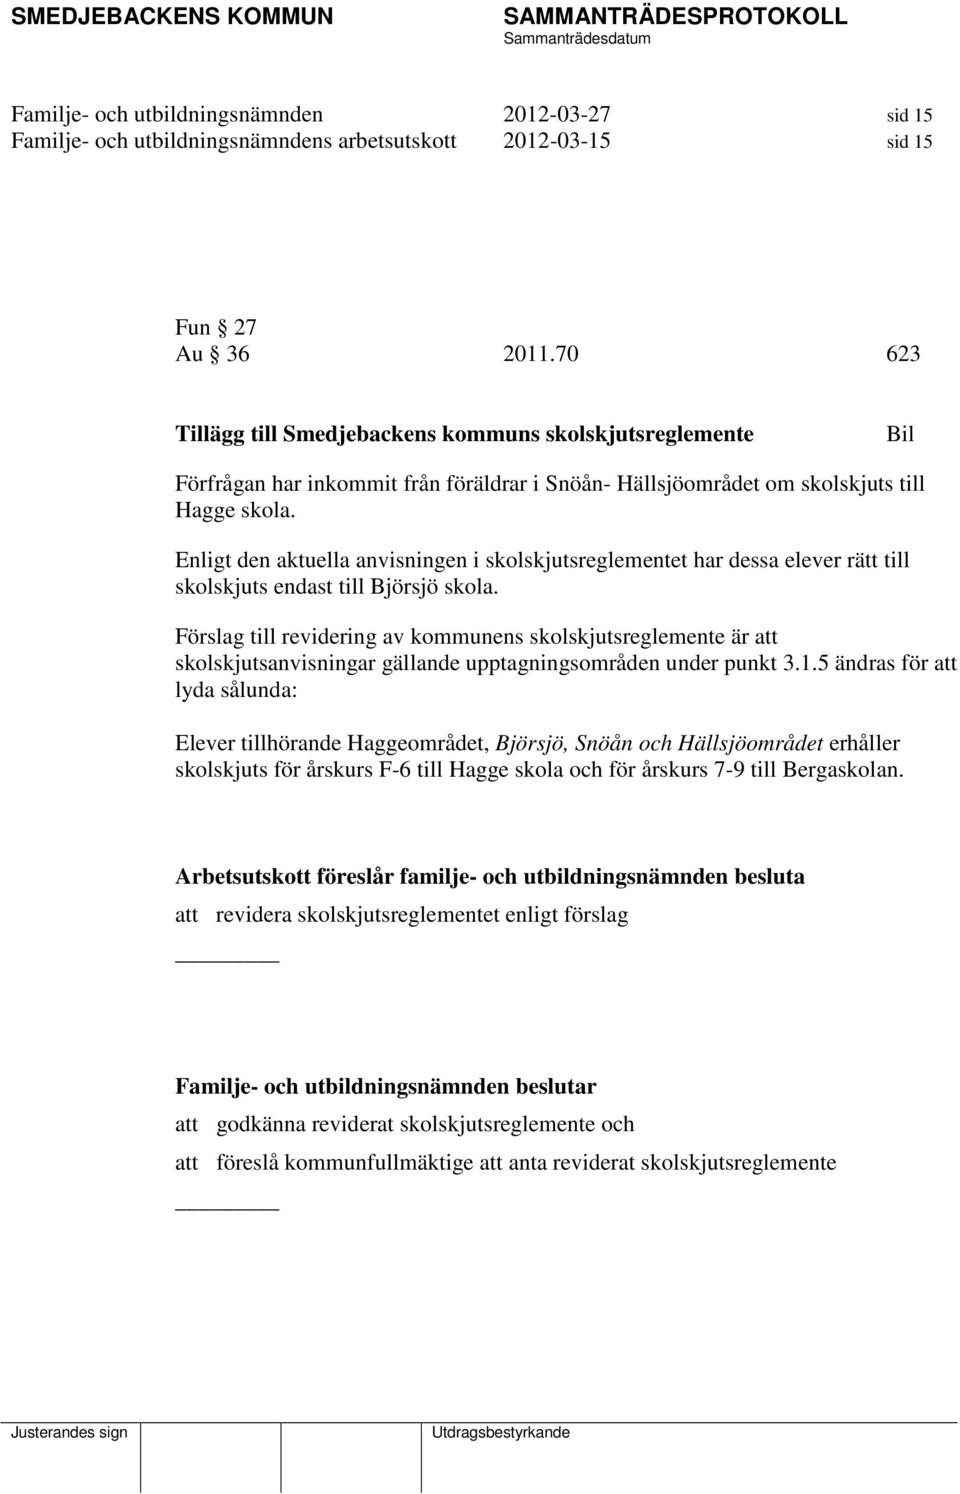 Enligt den aktuella anvisningen i skolskjutsreglementet har dessa elever rätt till skolskjuts endast till Björsjö skola.